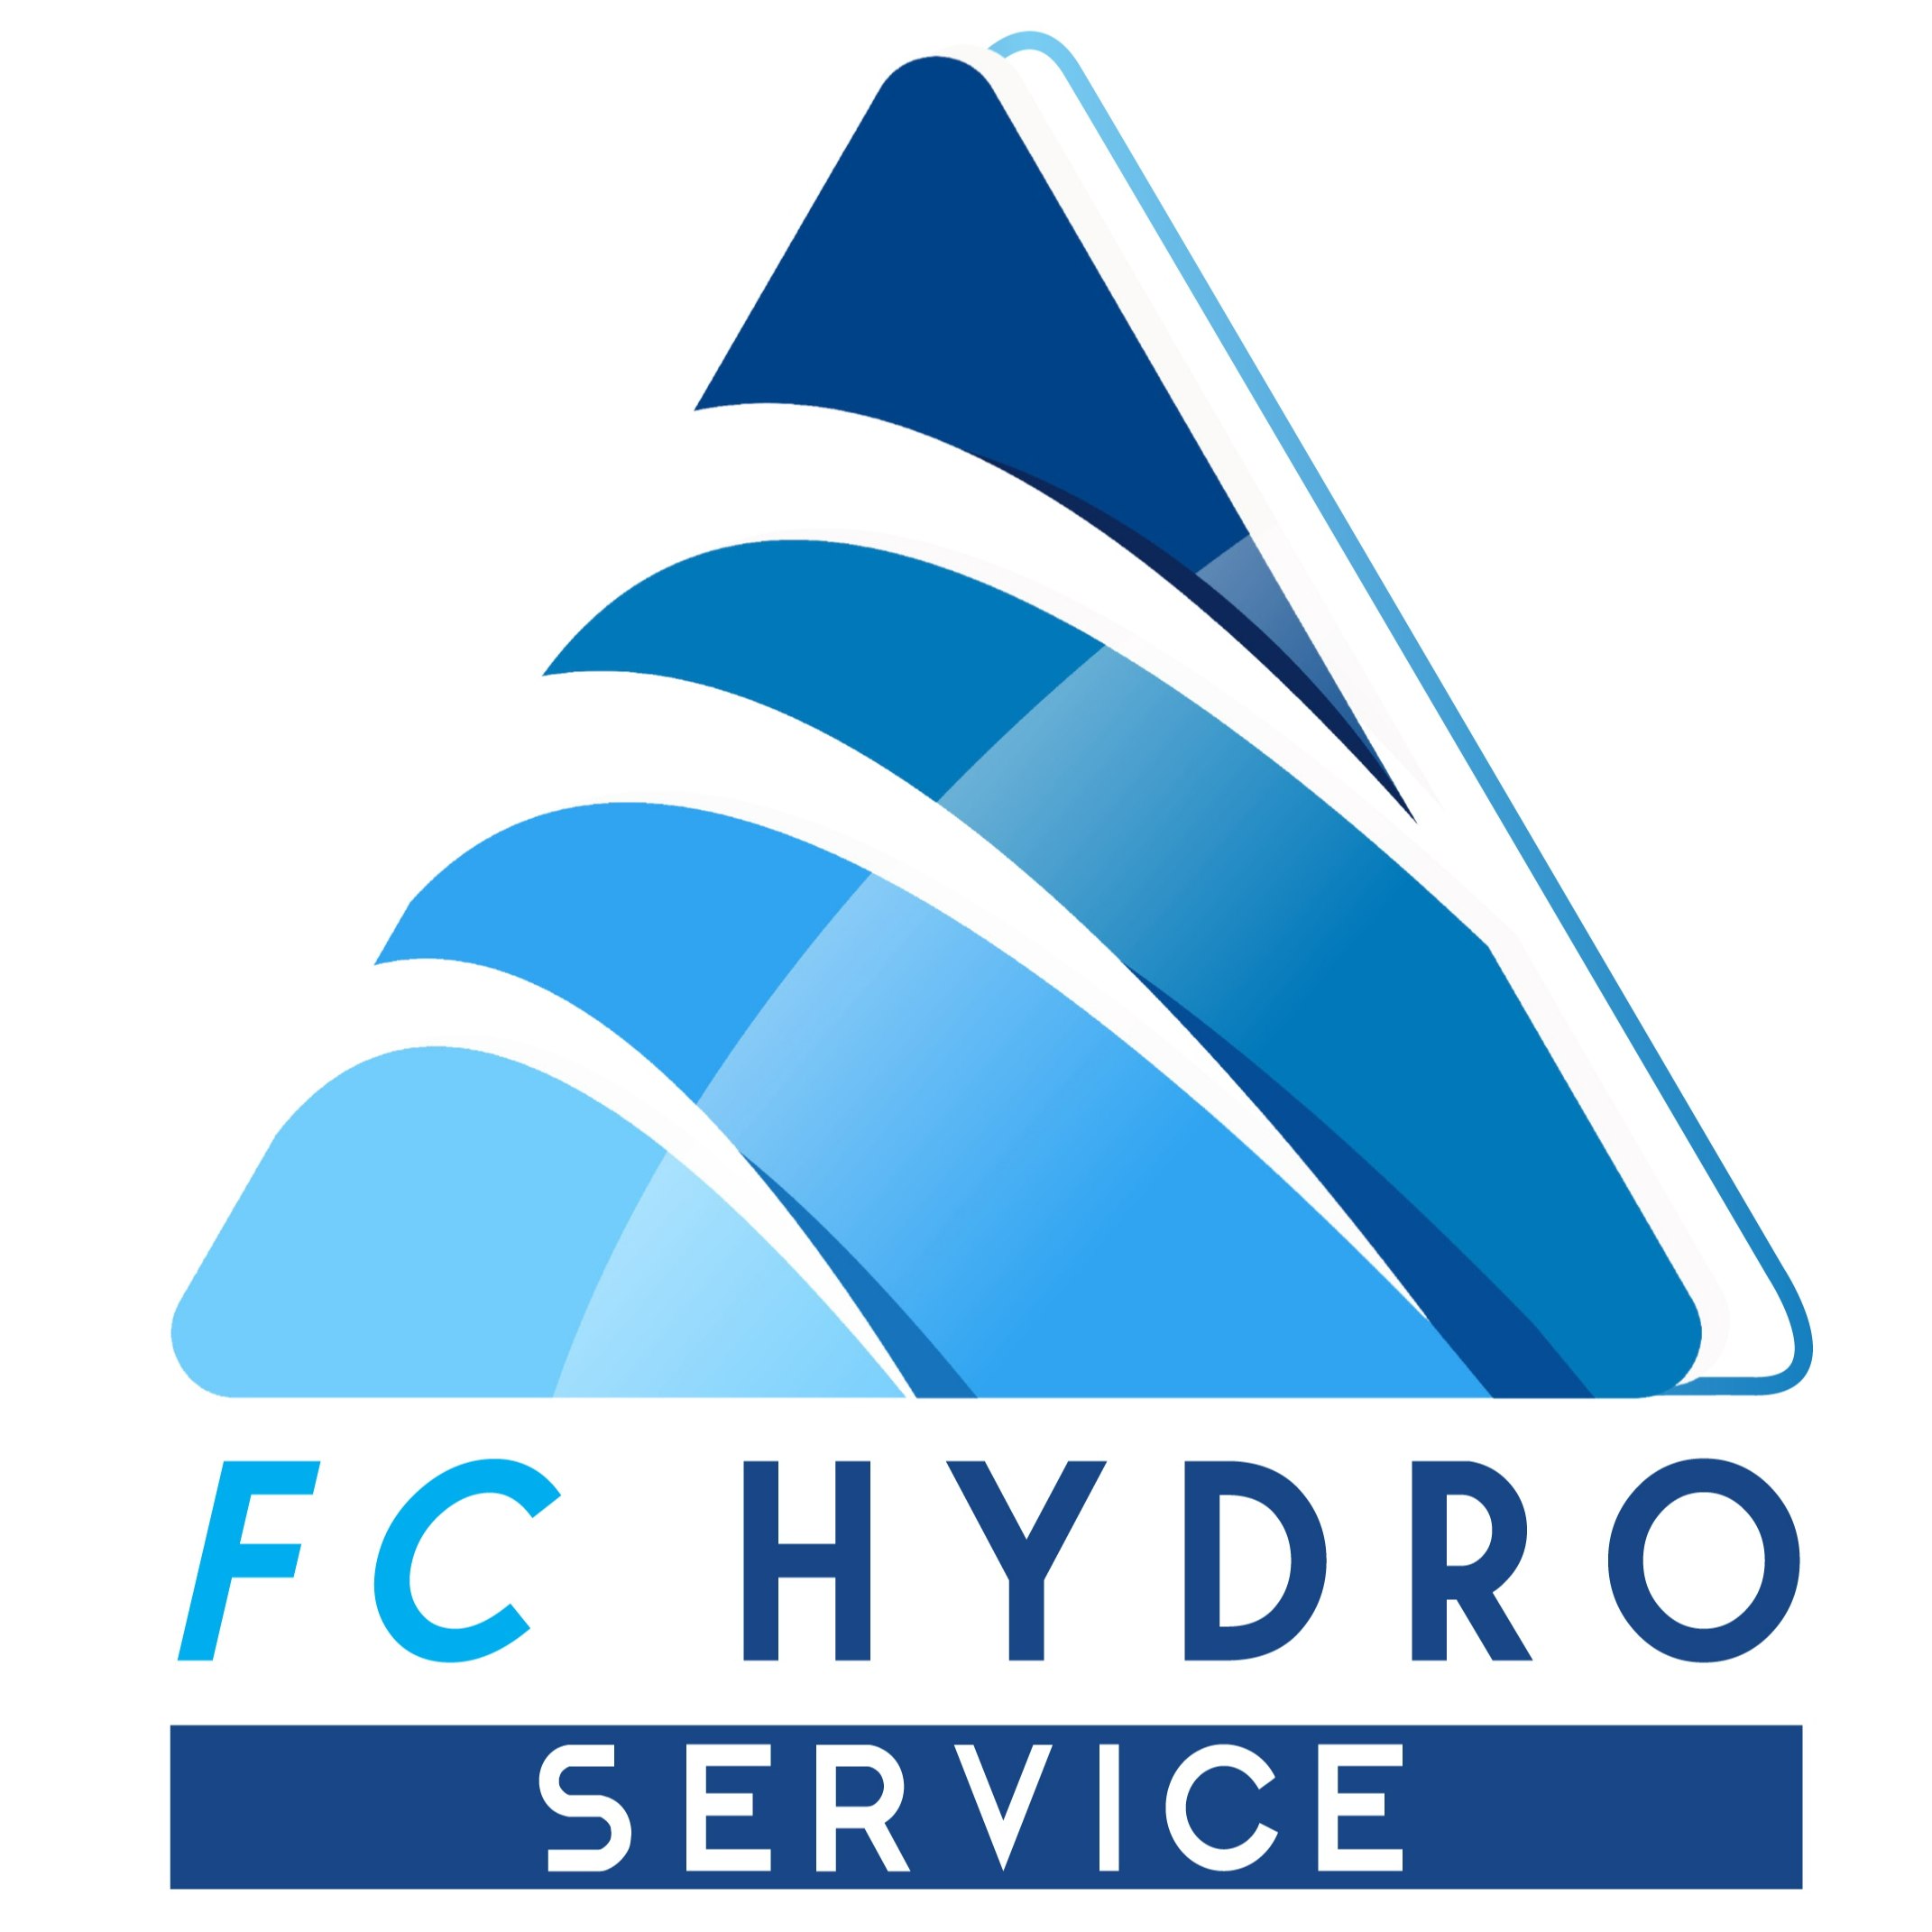 FC HYDRO SERVICE